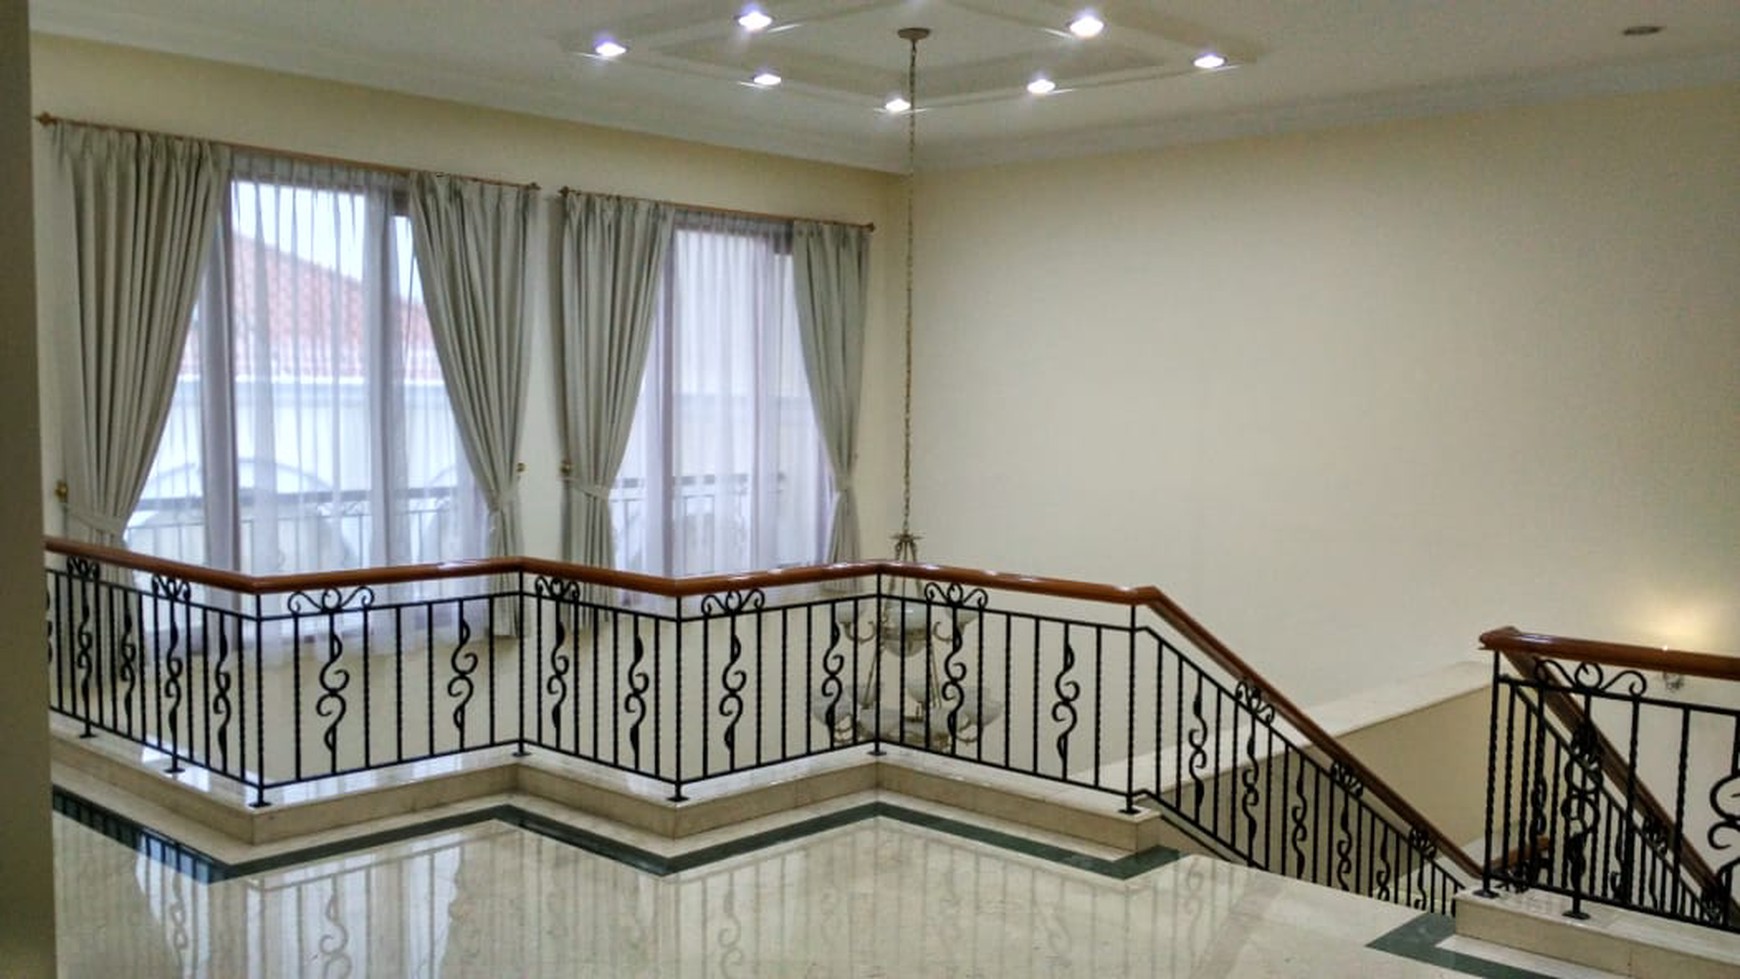 Rumah mewah dan lokasi premium di Pondok Indah Jakarta Selatan